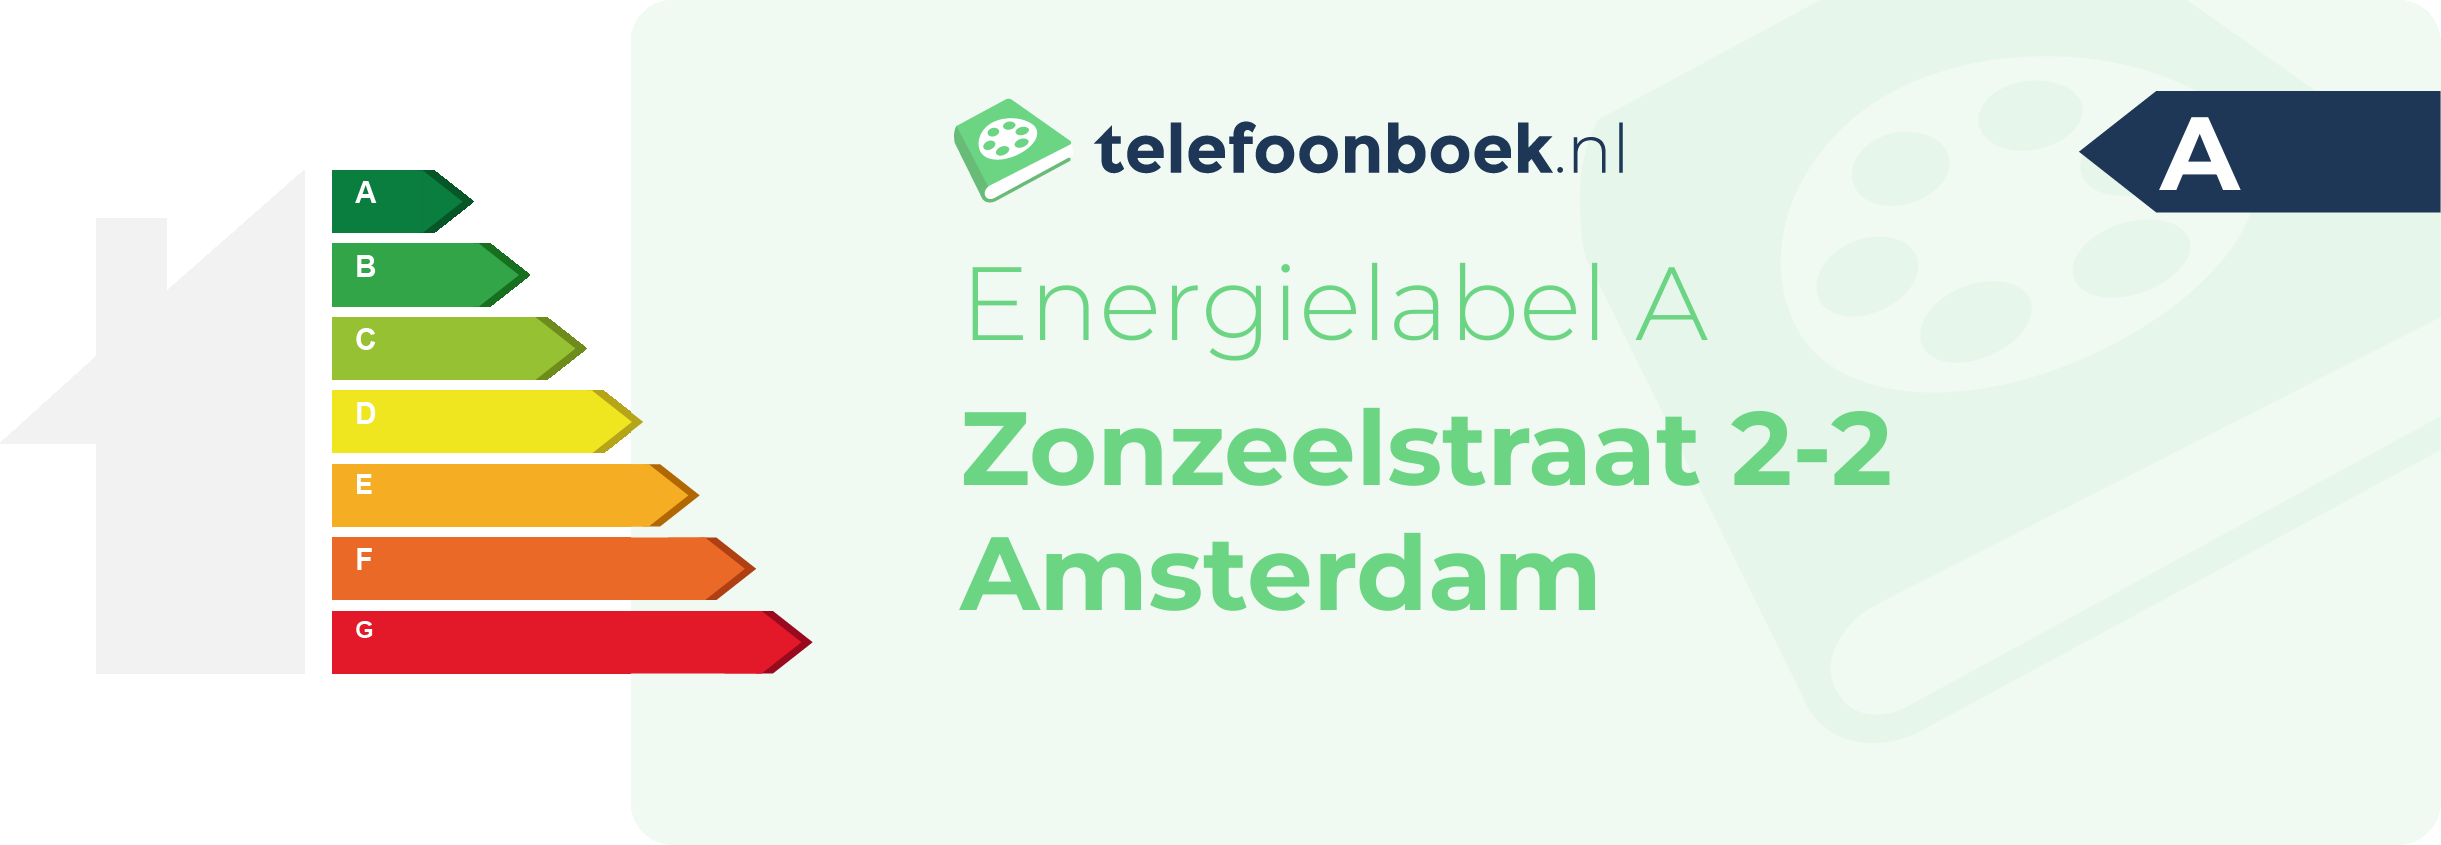 Energielabel Zonzeelstraat 2-2 Amsterdam